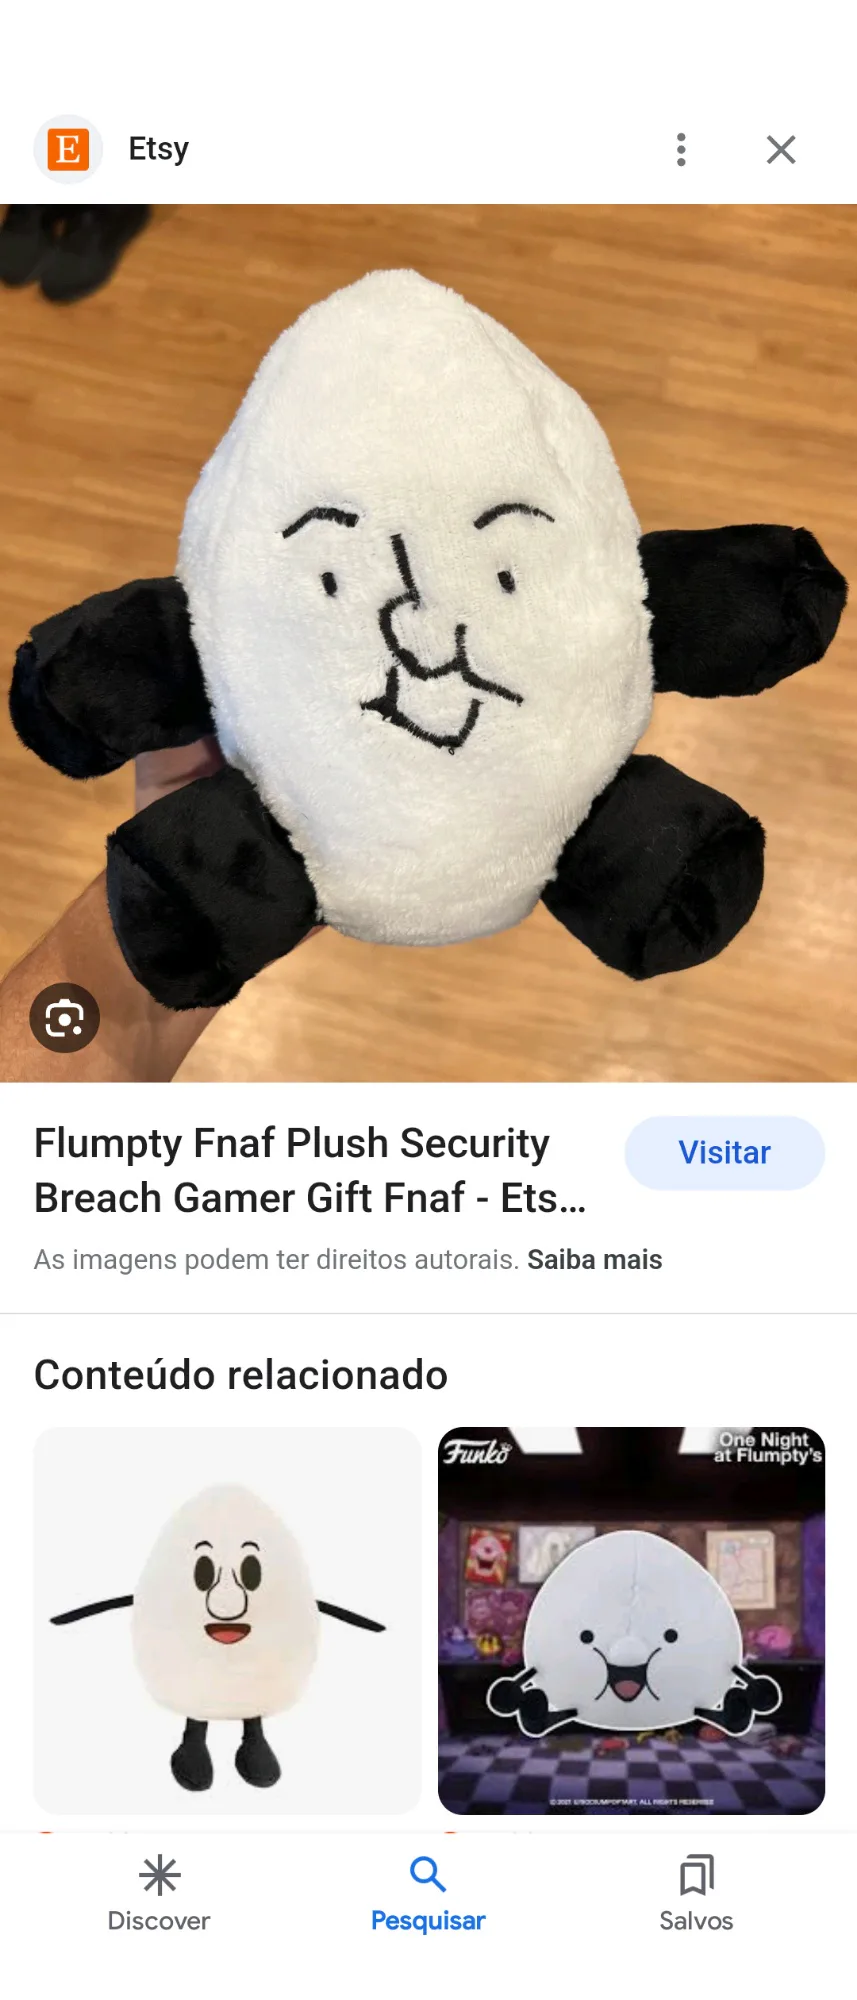 Flumpty Fnaf Plush Security Breach Gamer Gift Fnaf 